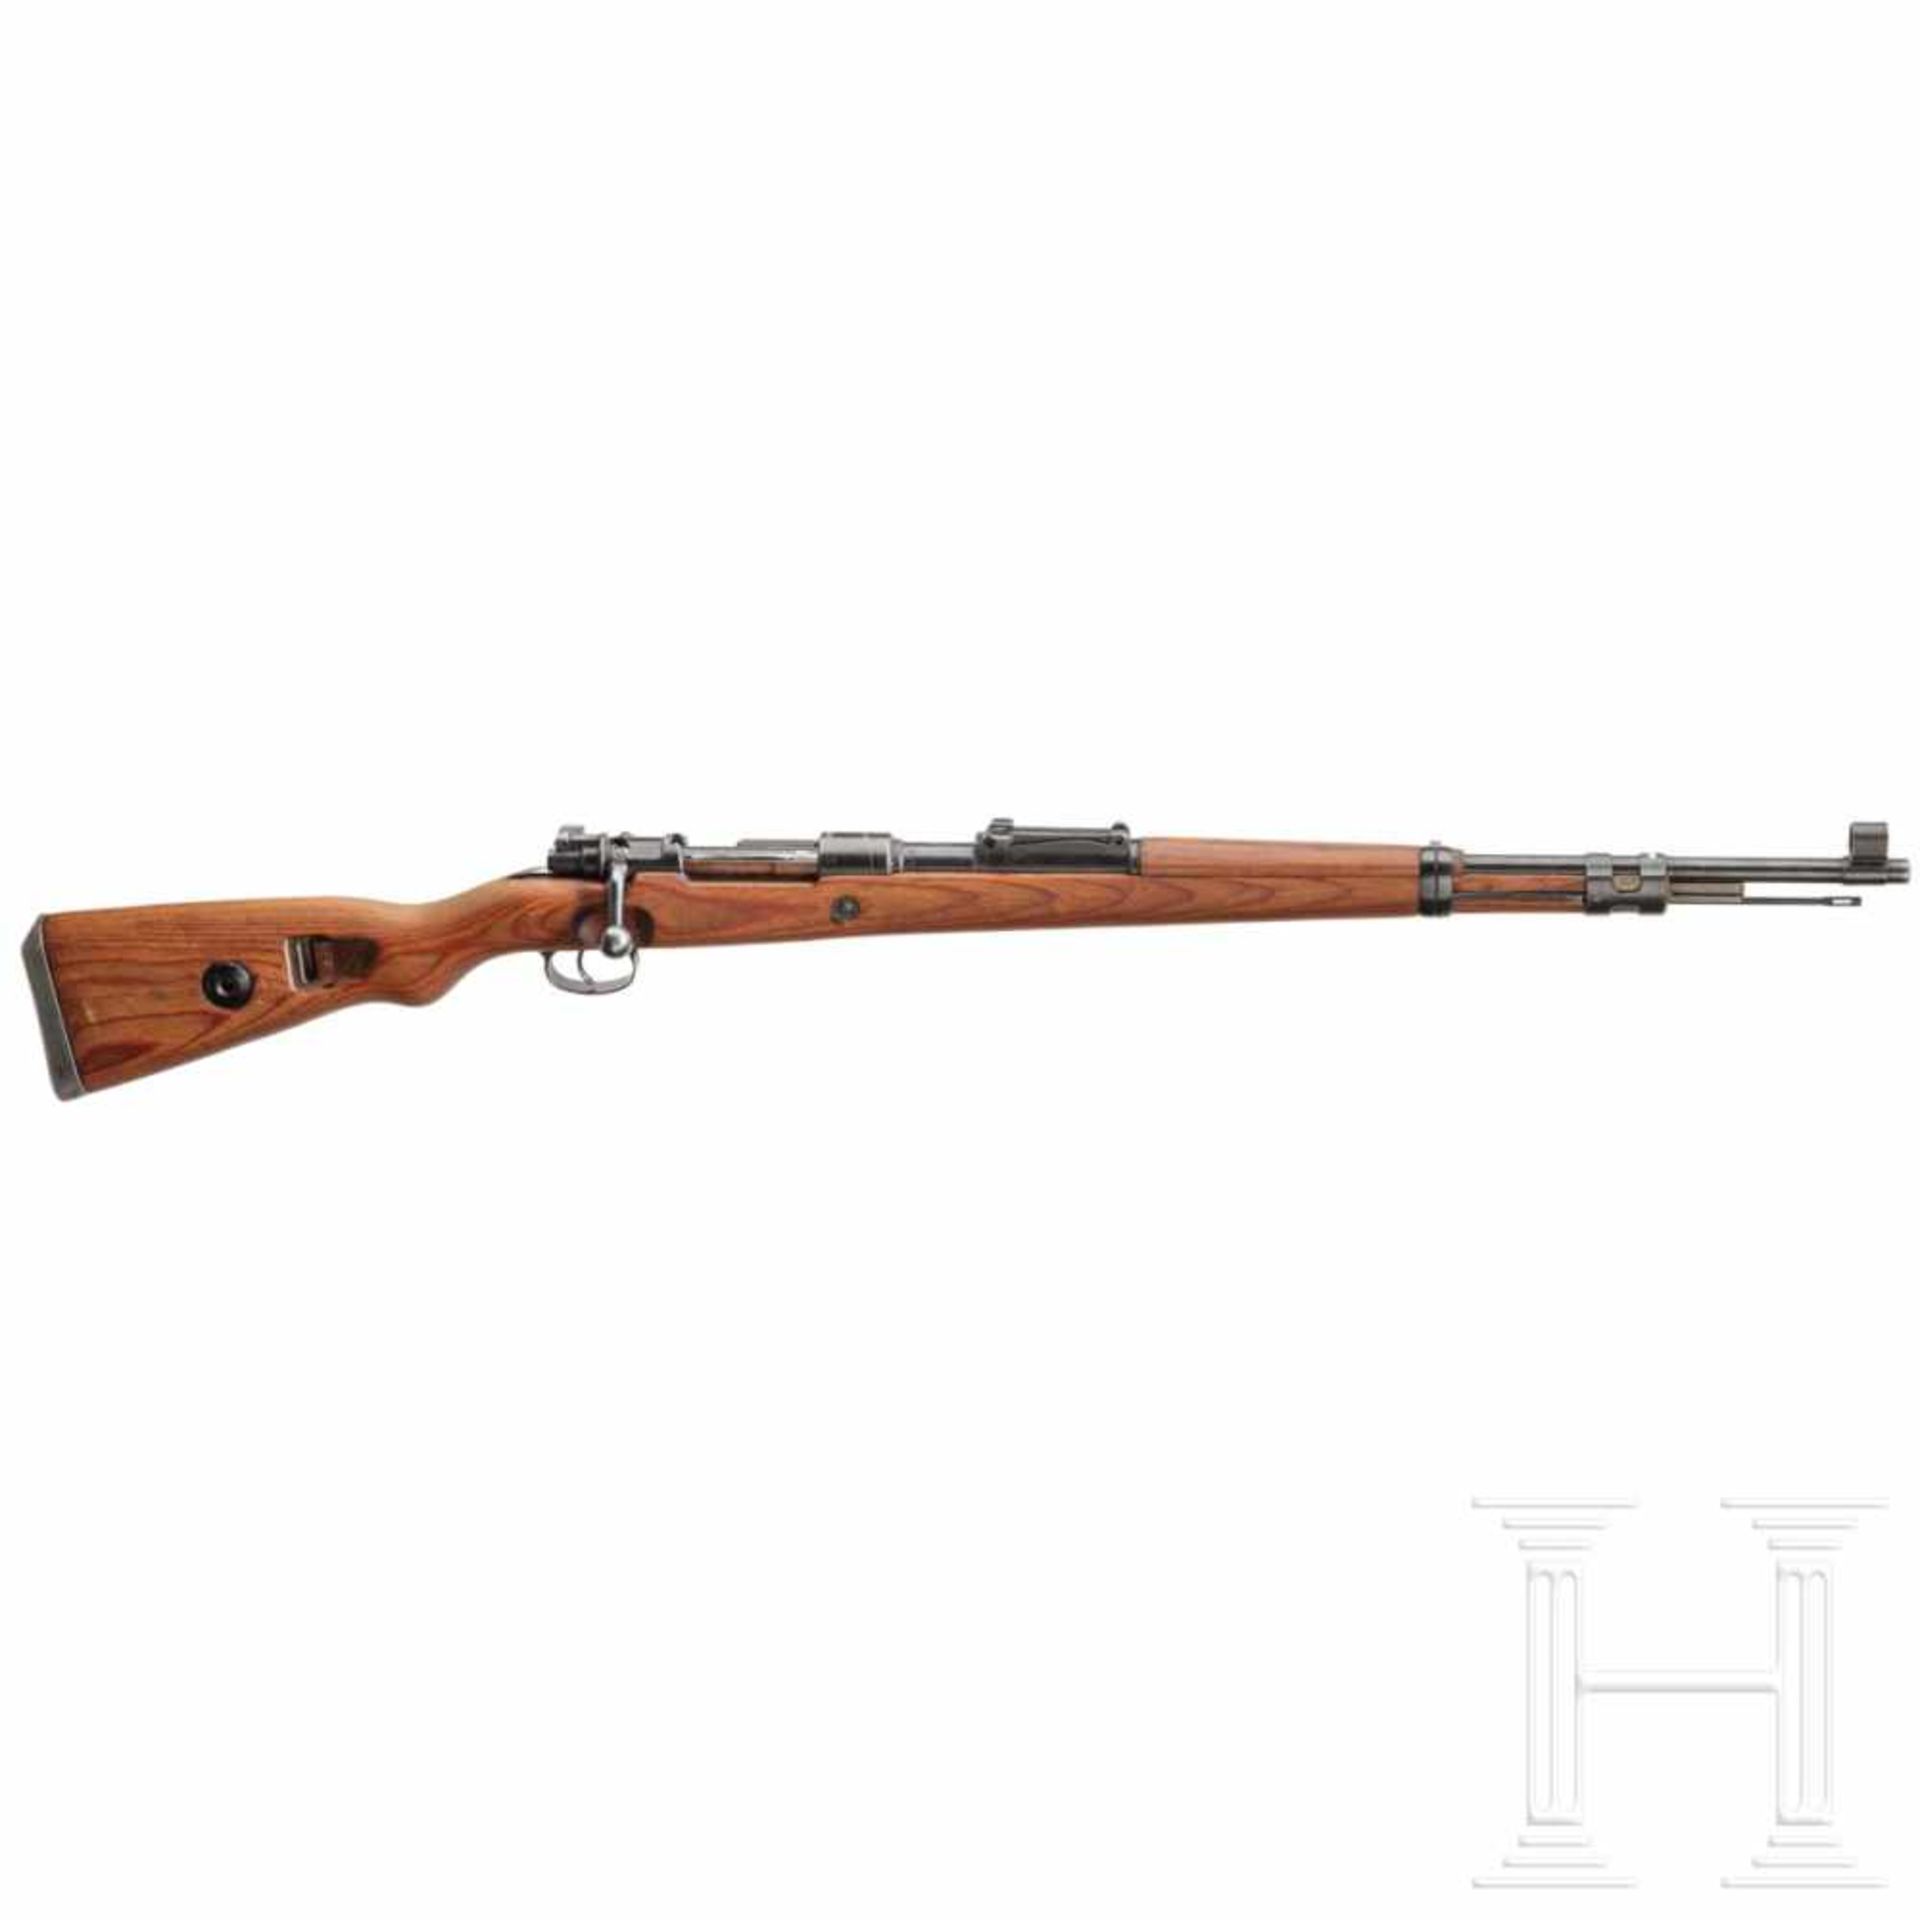 A carbine 98 k, code "bcd - 41"Kal. 8x57 IS, Nr. 415a, nummerngleich bis auf Magazinkasten und